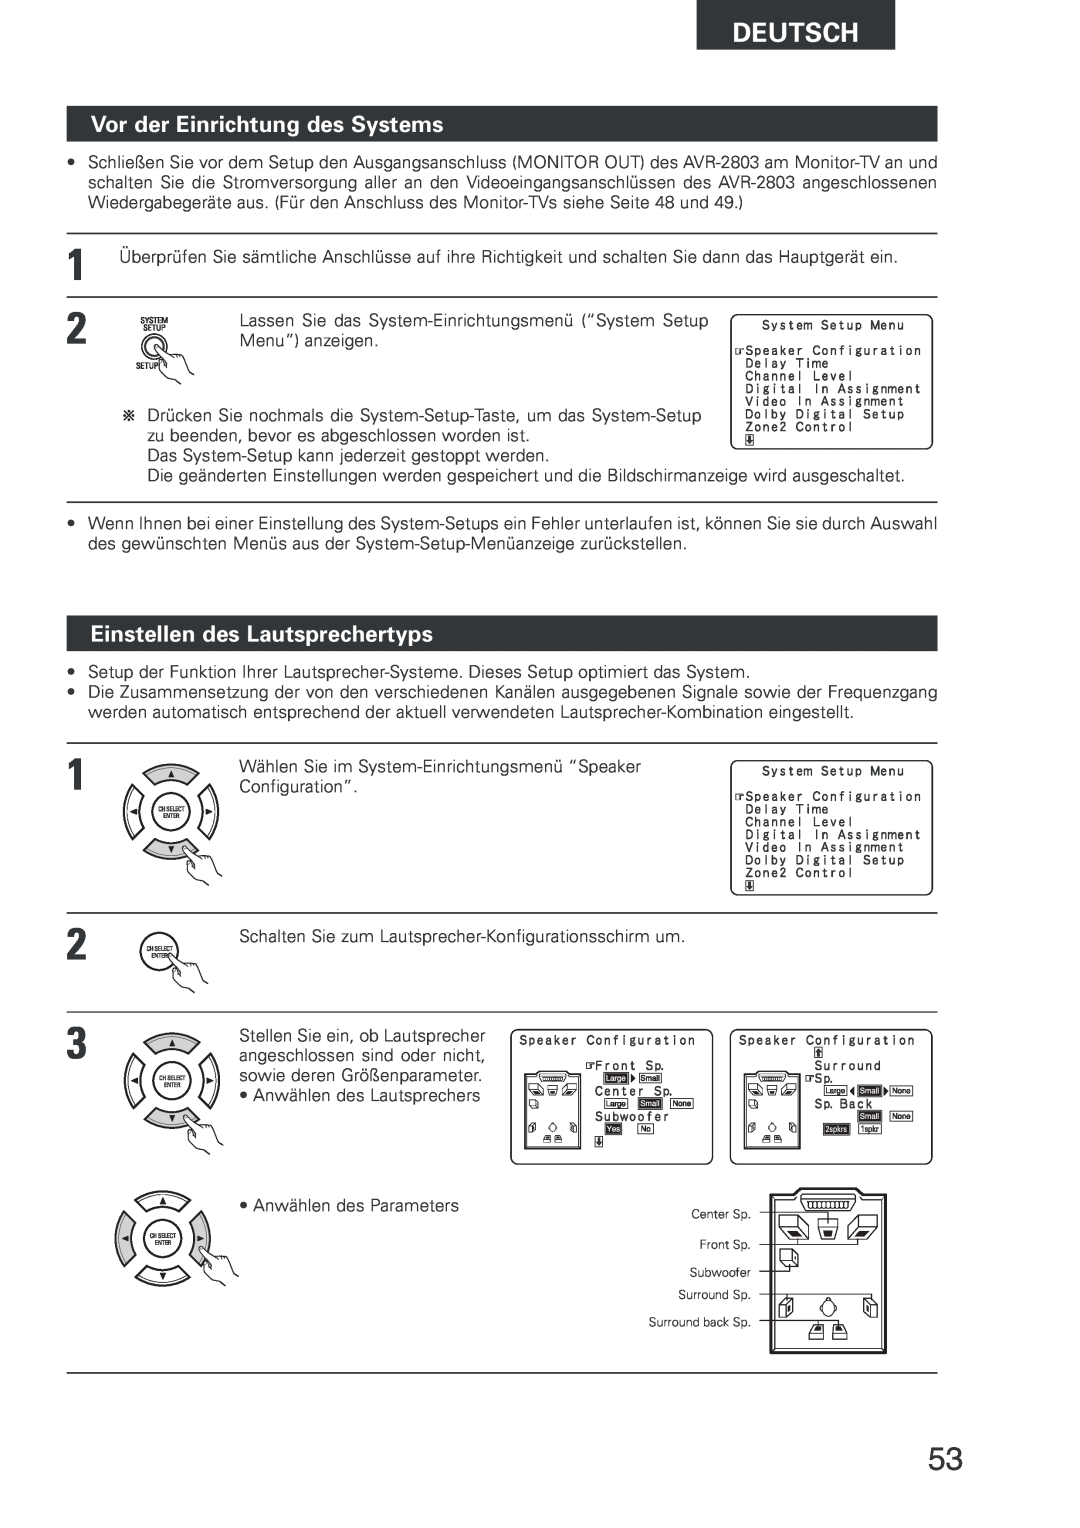 Denon AVR-2803 manual Vor der Einrichtung des Systems, Einstellen des Lautsprechertyps, Deutsch 